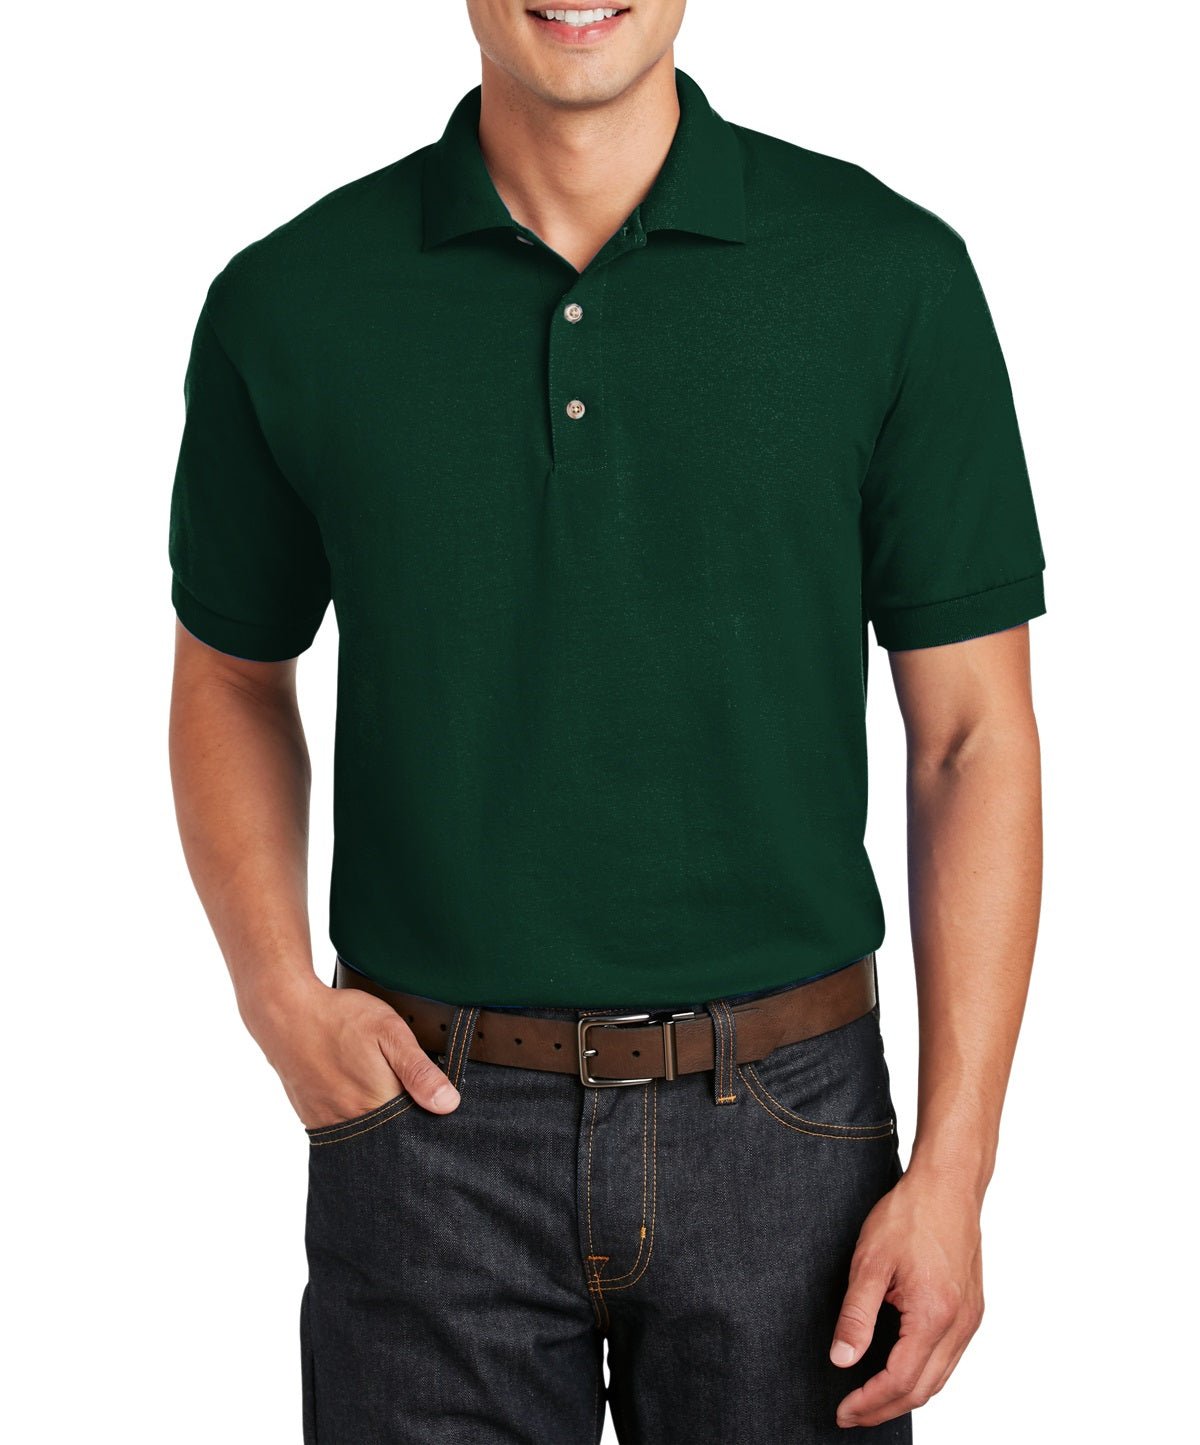 Gildan® DryBlend Jersey Knit Sport Shirt